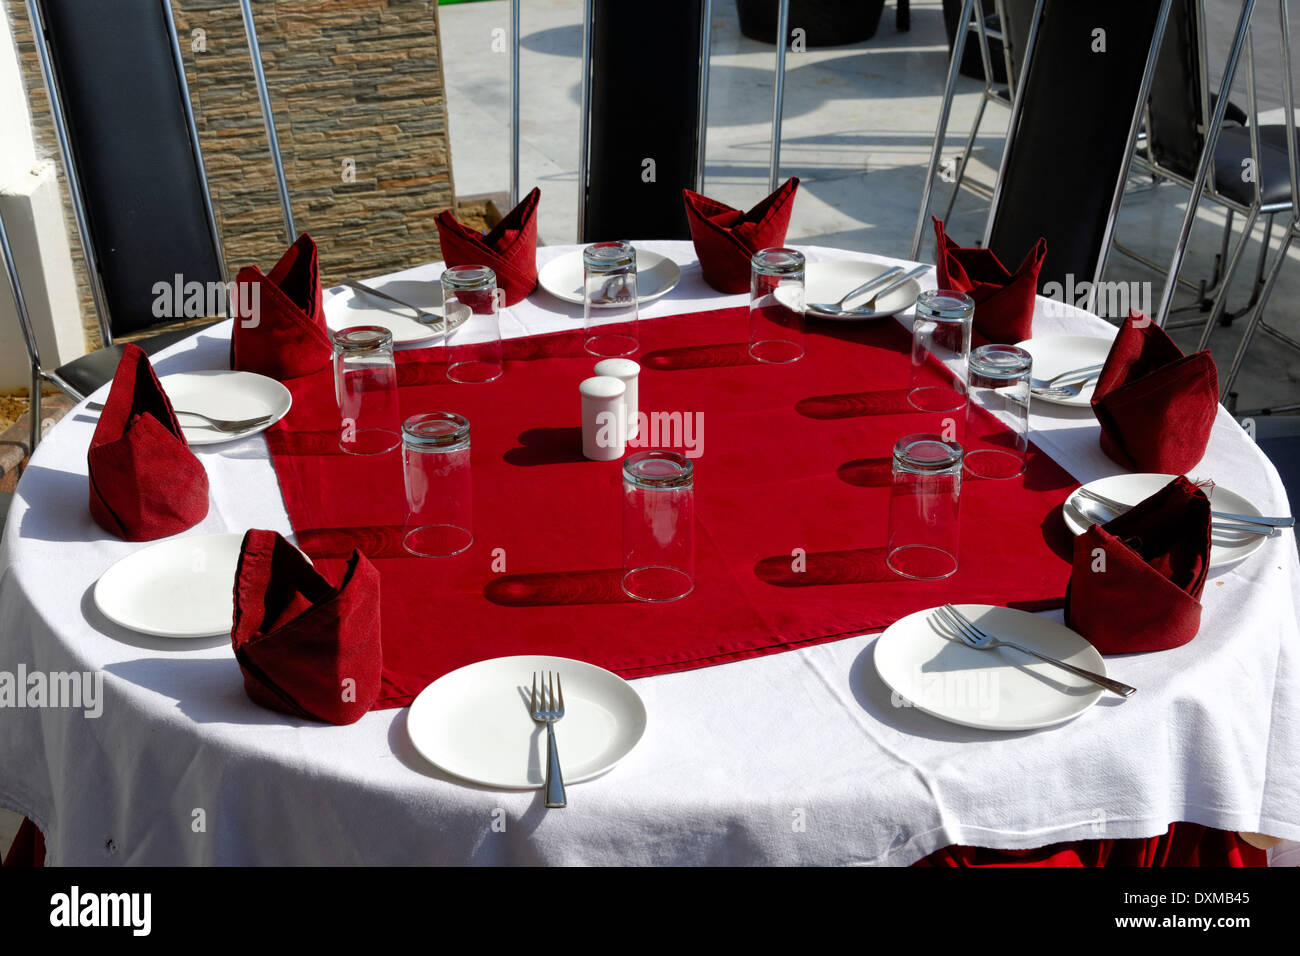 Table, verres, fourchettes, assiettes, serviettes et nappes blanches sur rouge Banque D'Images